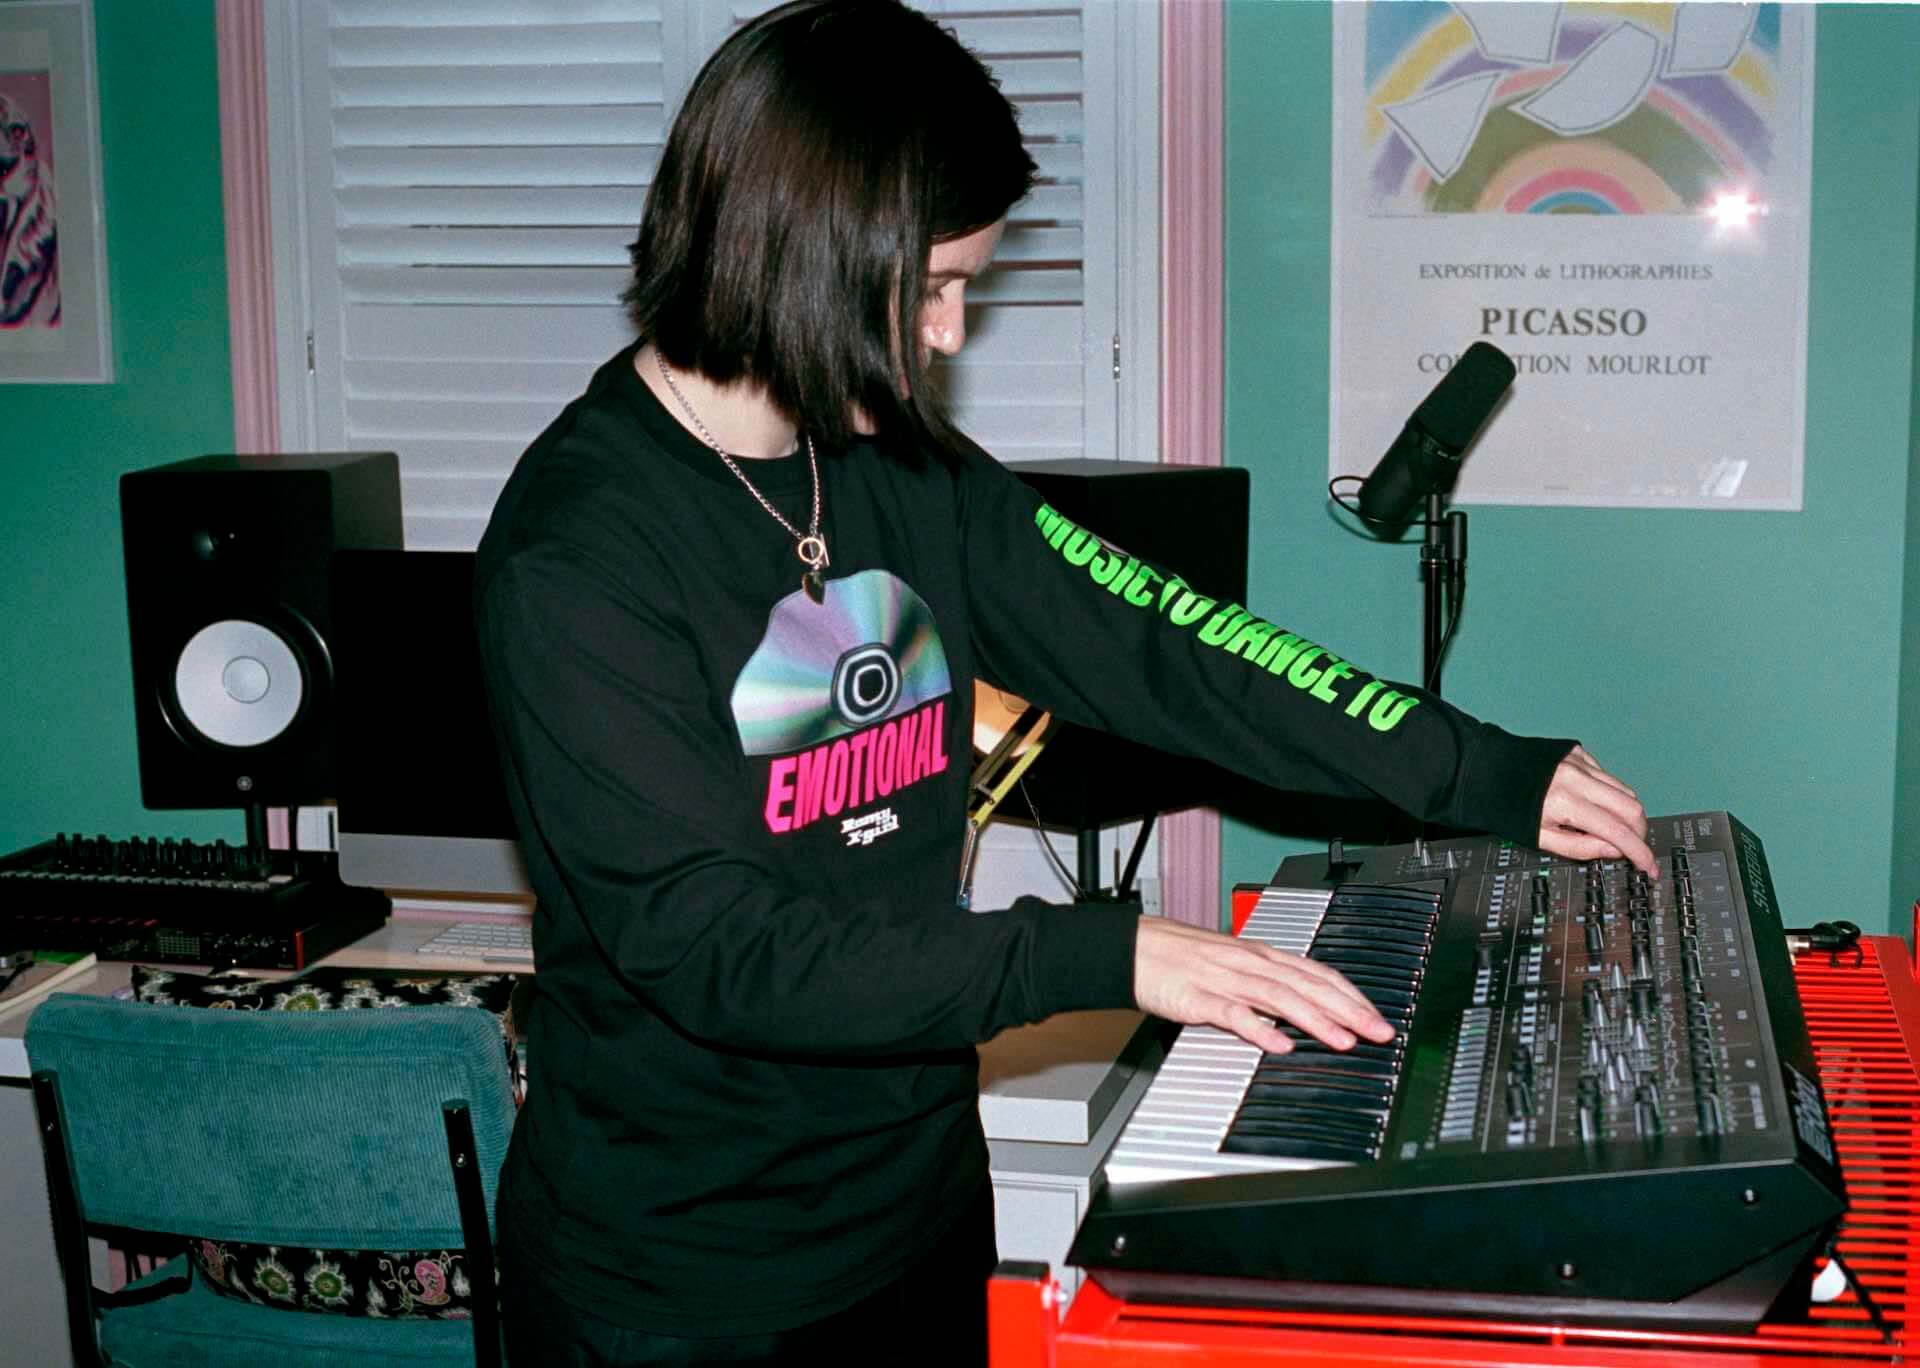 The xxのロミーとX-girlによるコラボアイテム第2弾が発表。本人出演のInstagramライブも実施